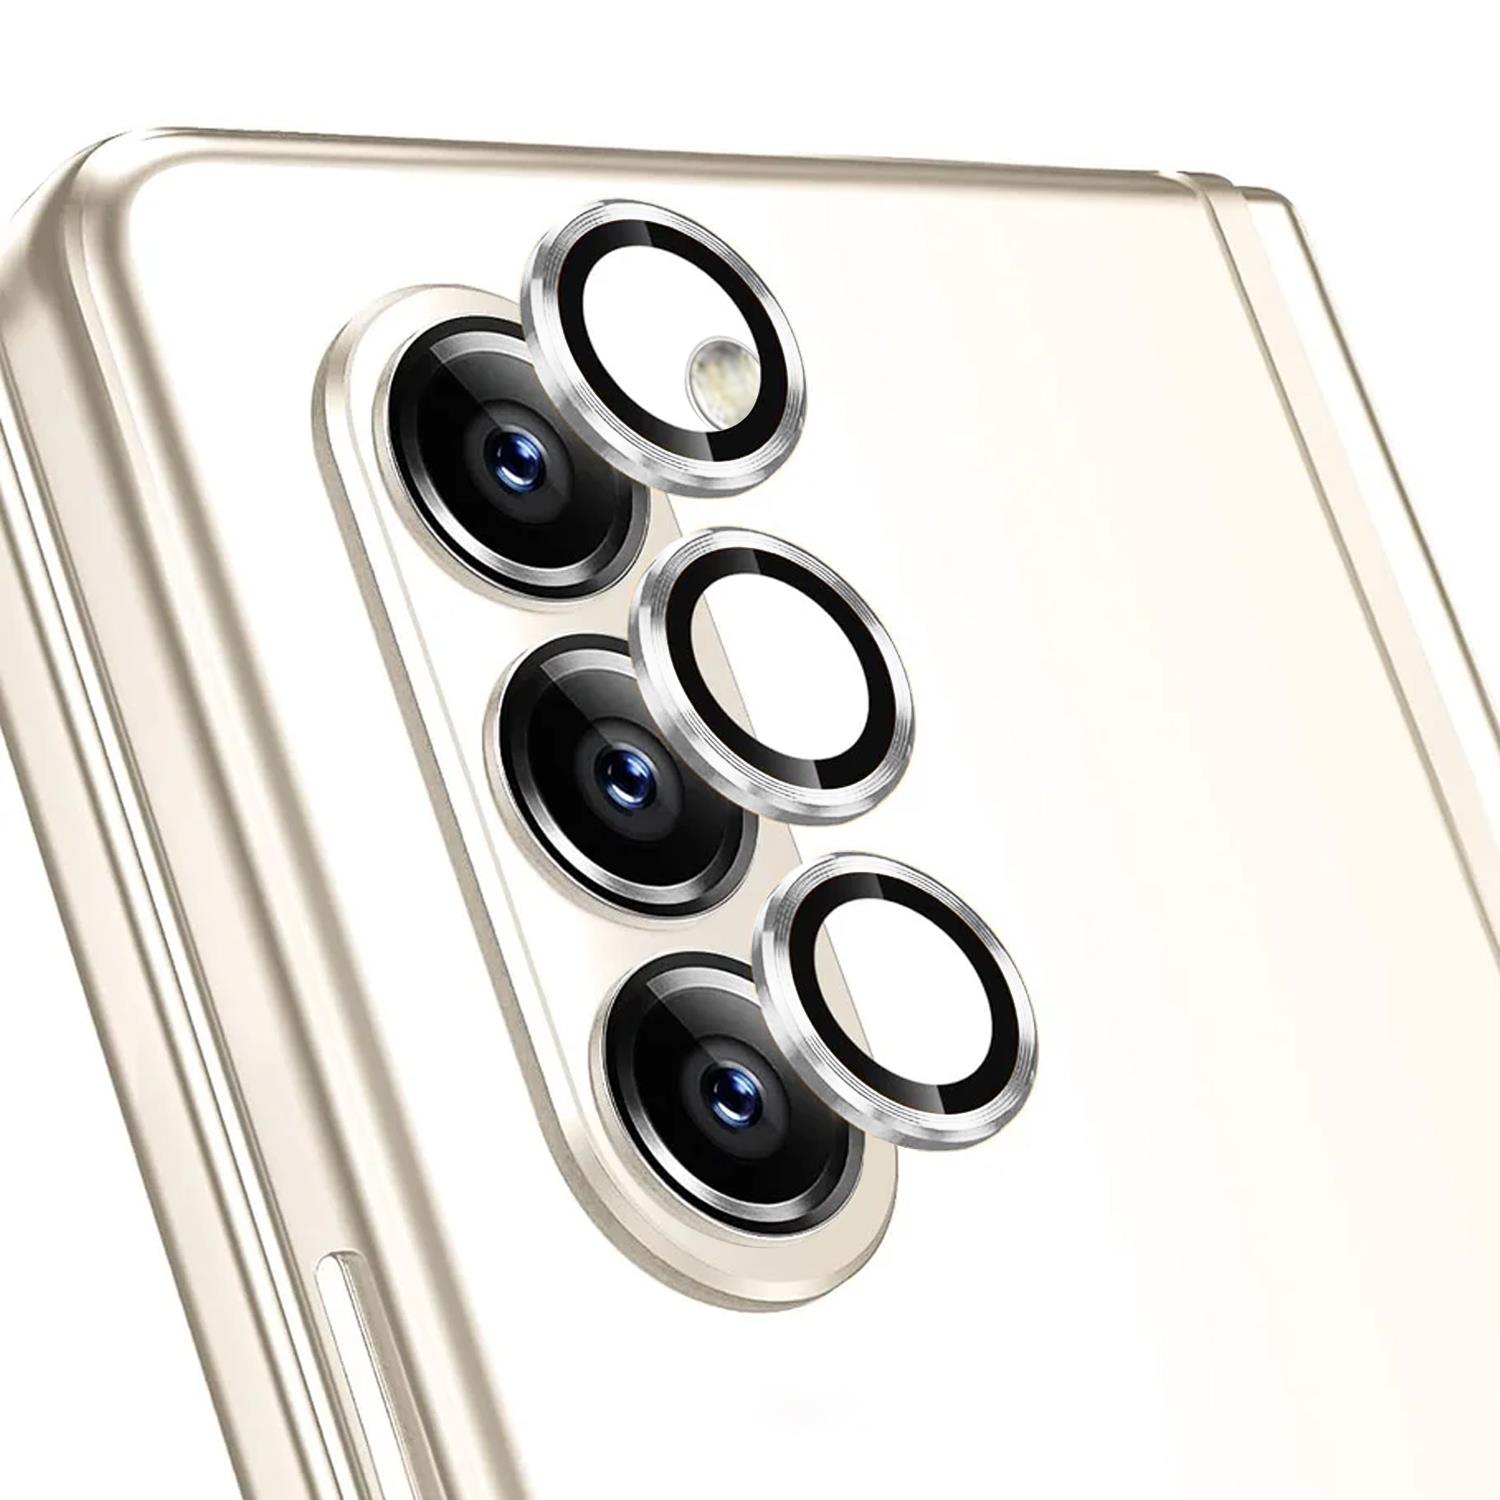 Microsonic Samsung Galaxy Z Fold 5 Tekli Kamera Lens Koruma Camı Gümüş